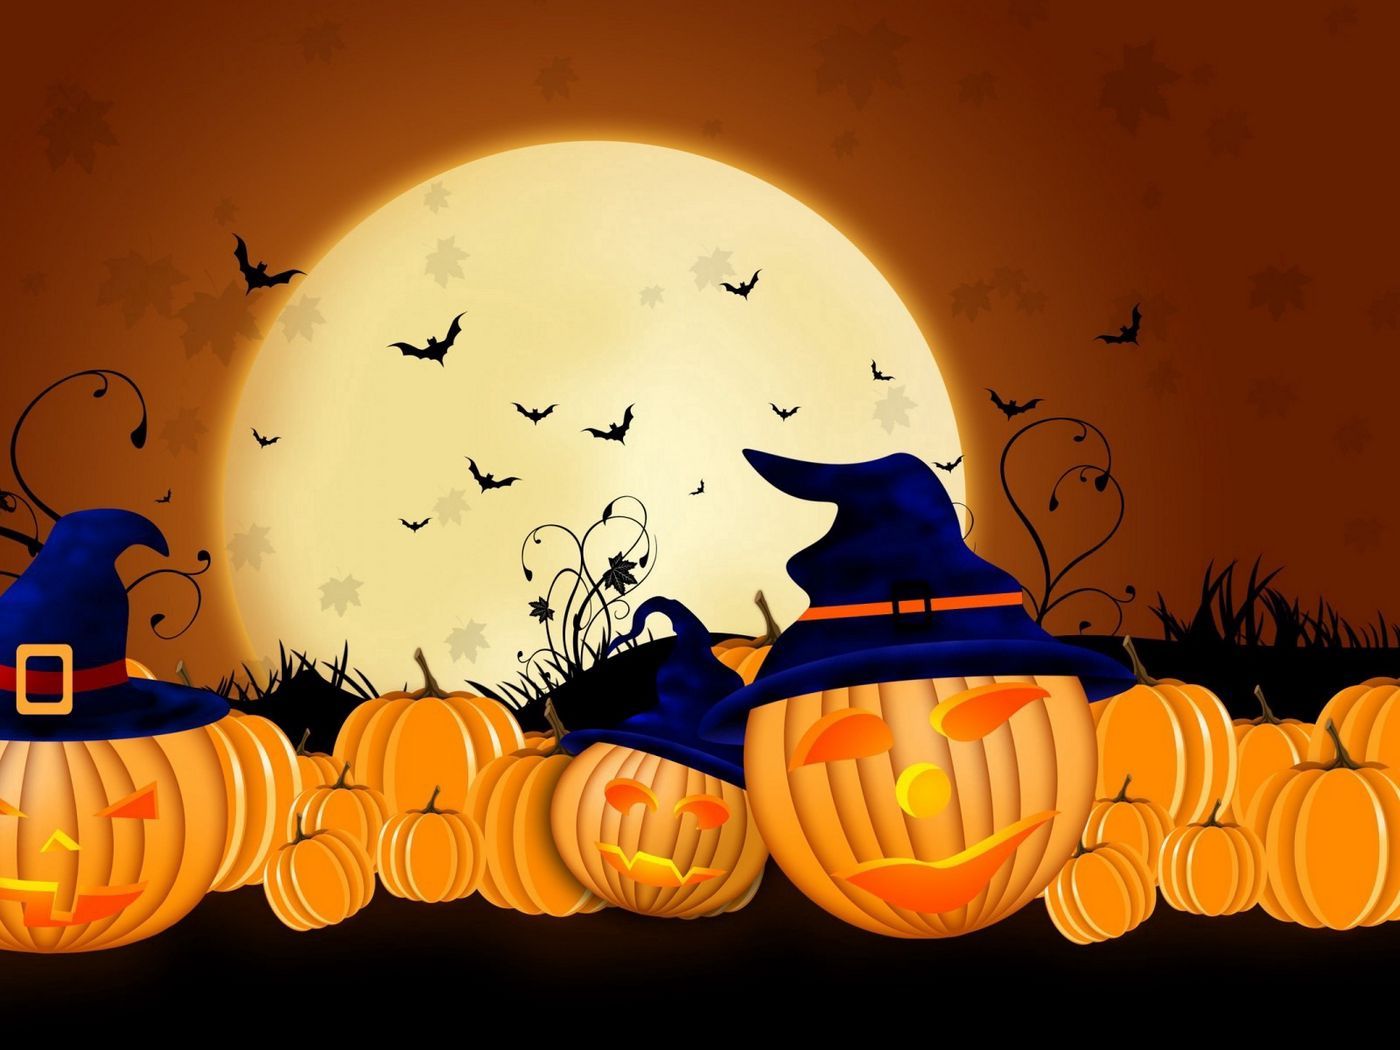 Download wallpaper 1400x1050 halloween, pumpkins, autumn standard 4:3 HD background